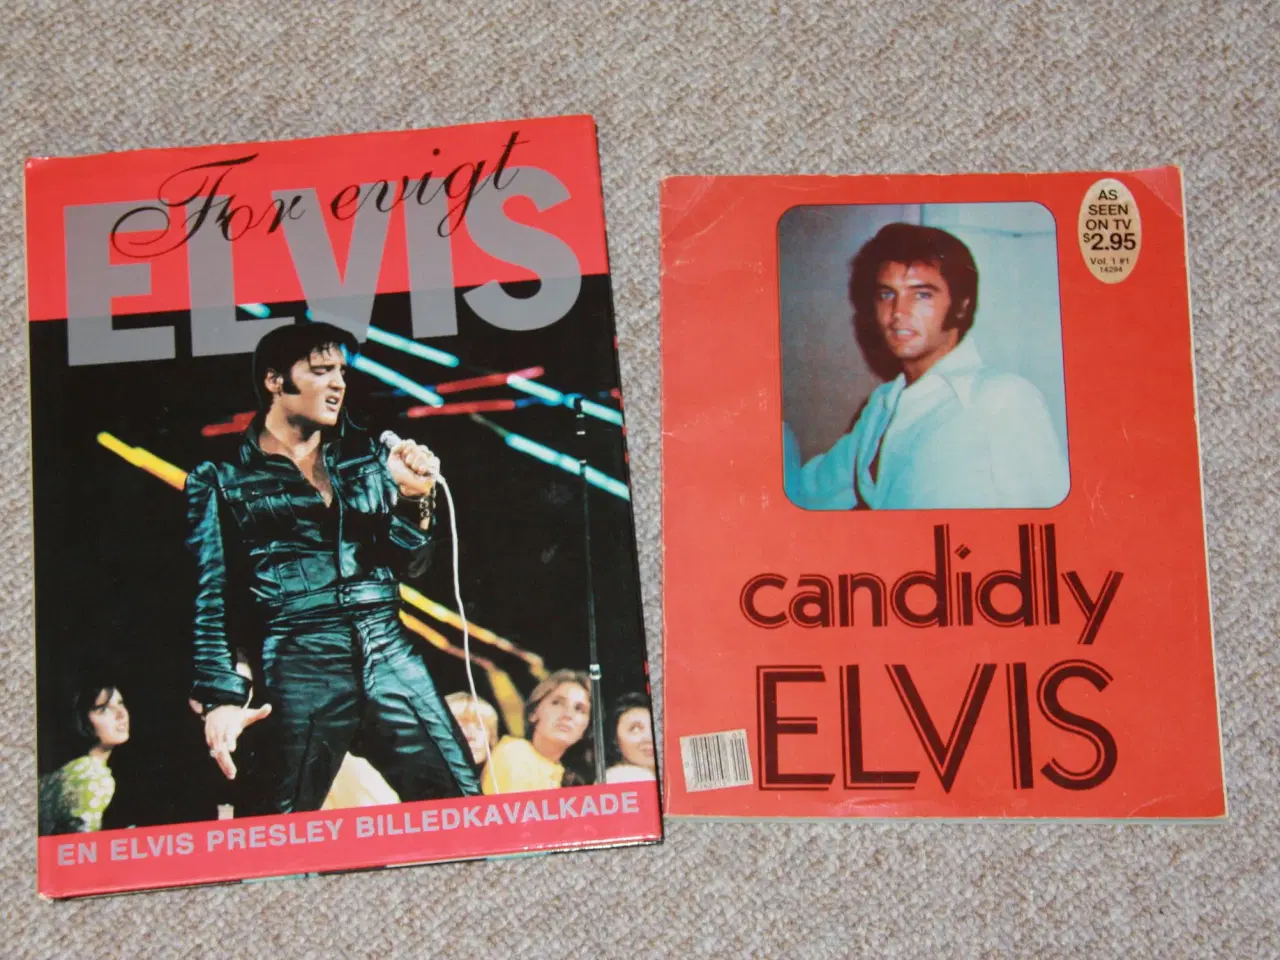 Billede 2 - Candidly Elvis fra 1978, For evigt Elvs